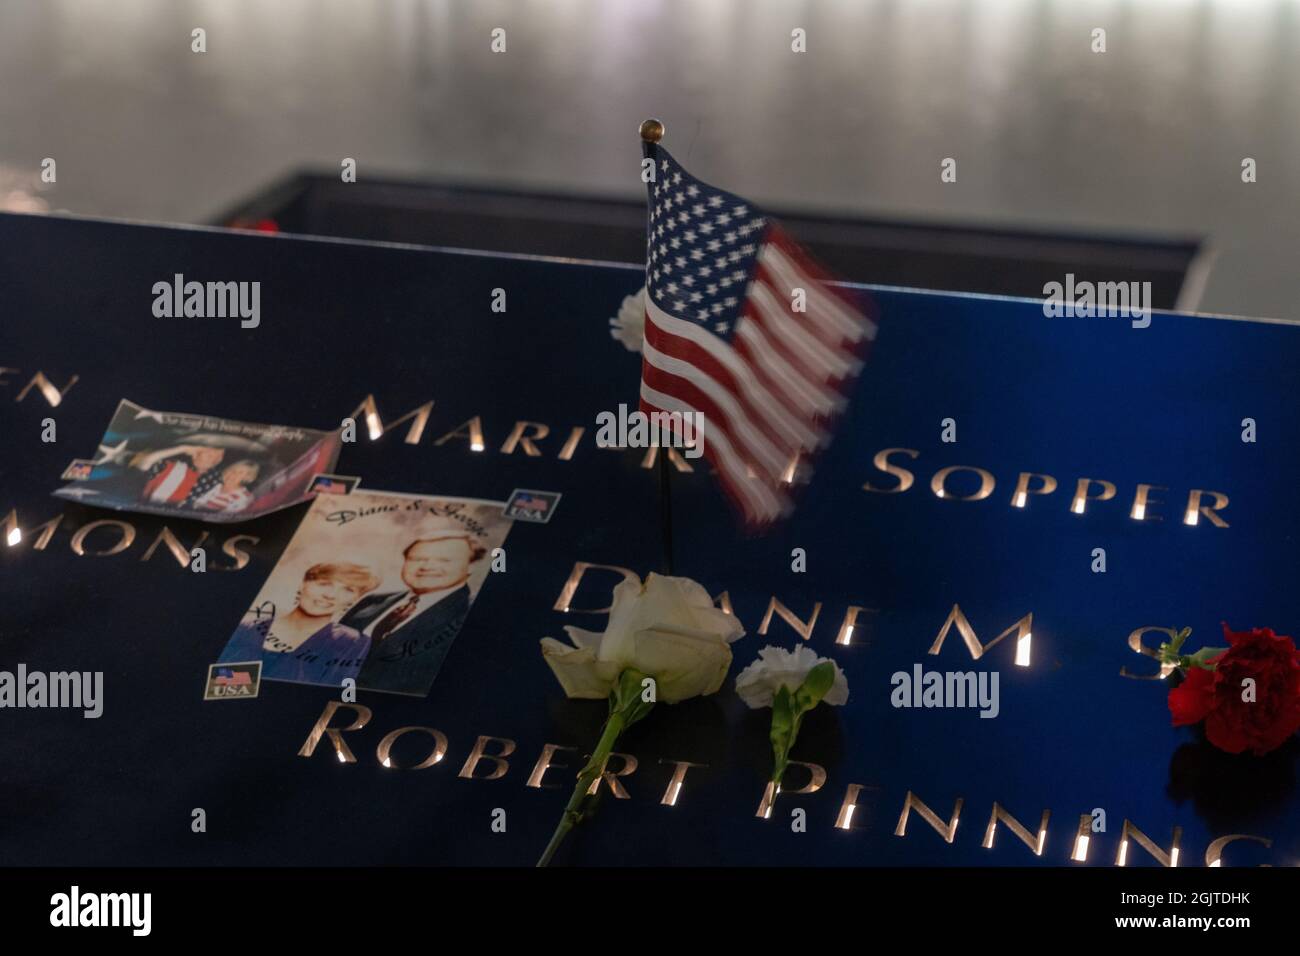 NEW YORK, NY - SEPTEMBRE 11 : fleurs et drapeau américain laissés en l'honneur des noms des personnes qui ont péri pendant la tragédie sont vus au National septembre 11 Memorial and Museum le 20e anniversaire de l'attaque terroriste le 11 septembre 2021 à New York City. Banque D'Images